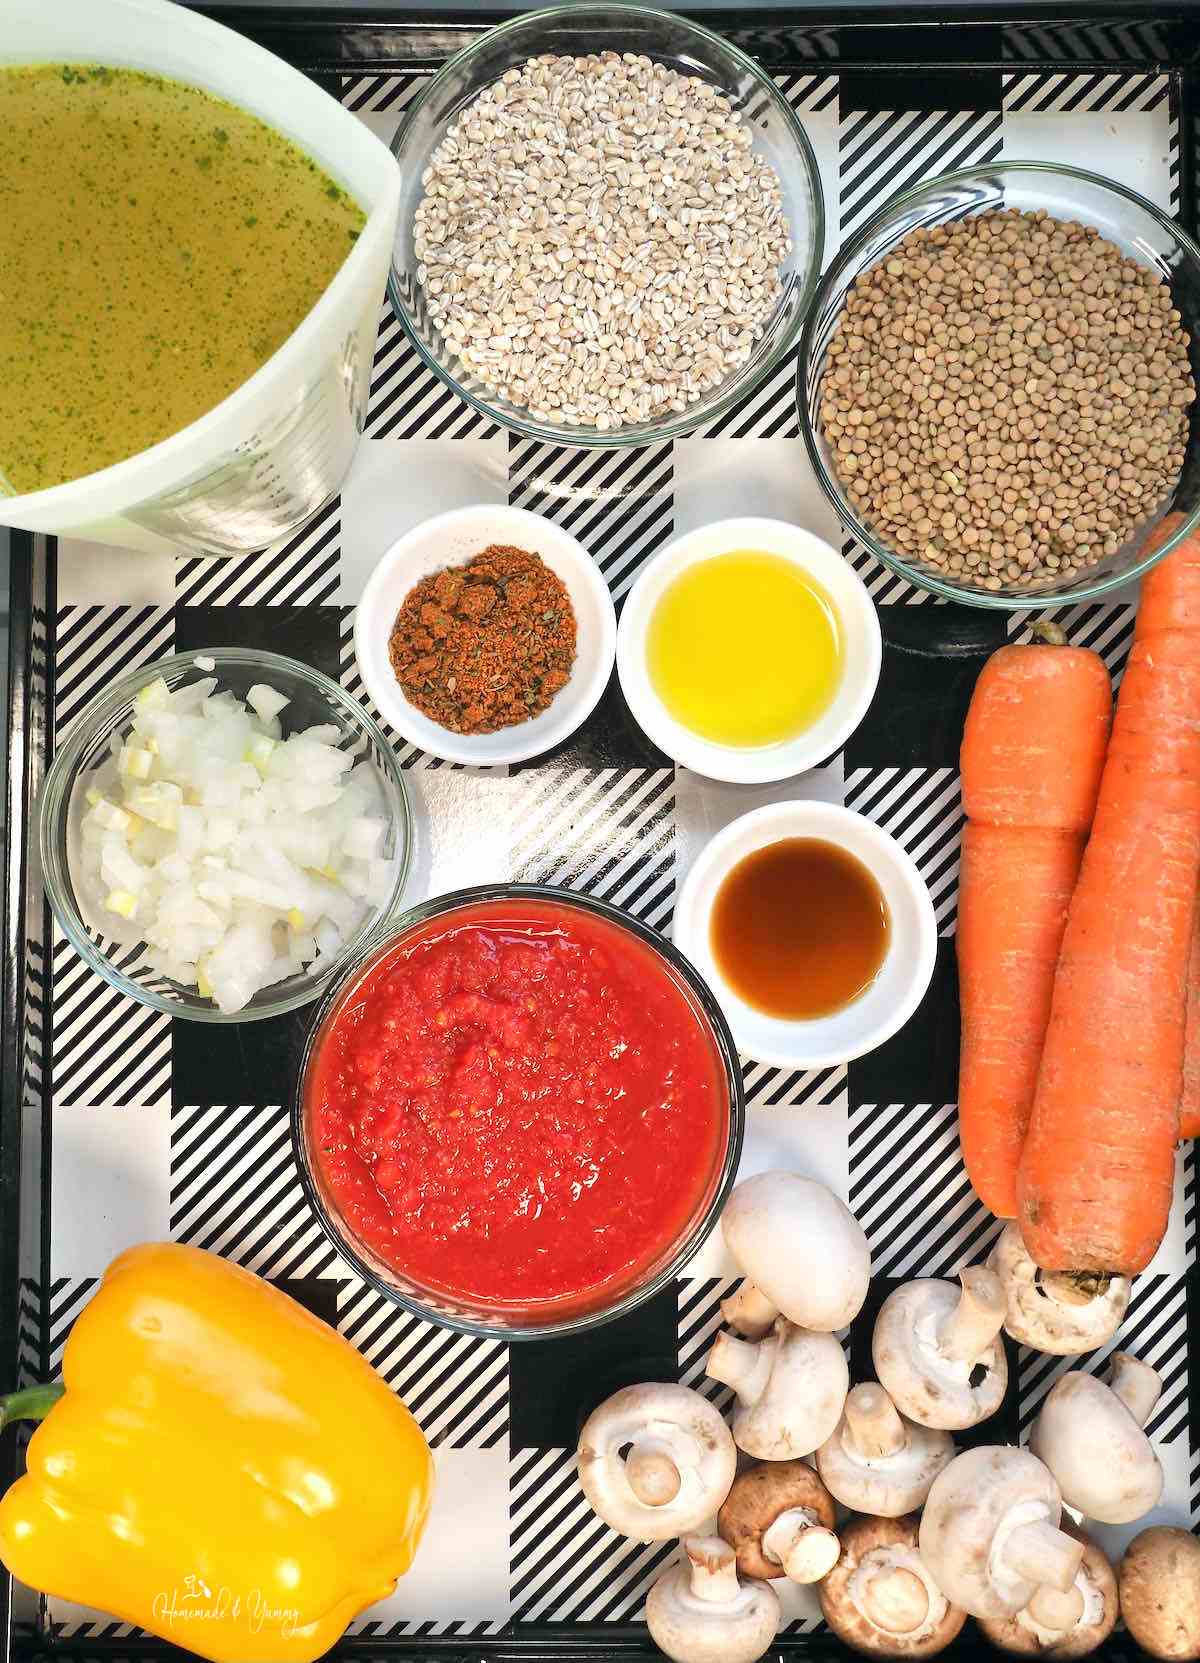 Ingredients for making vegan lentil and barley soup with vegetables.